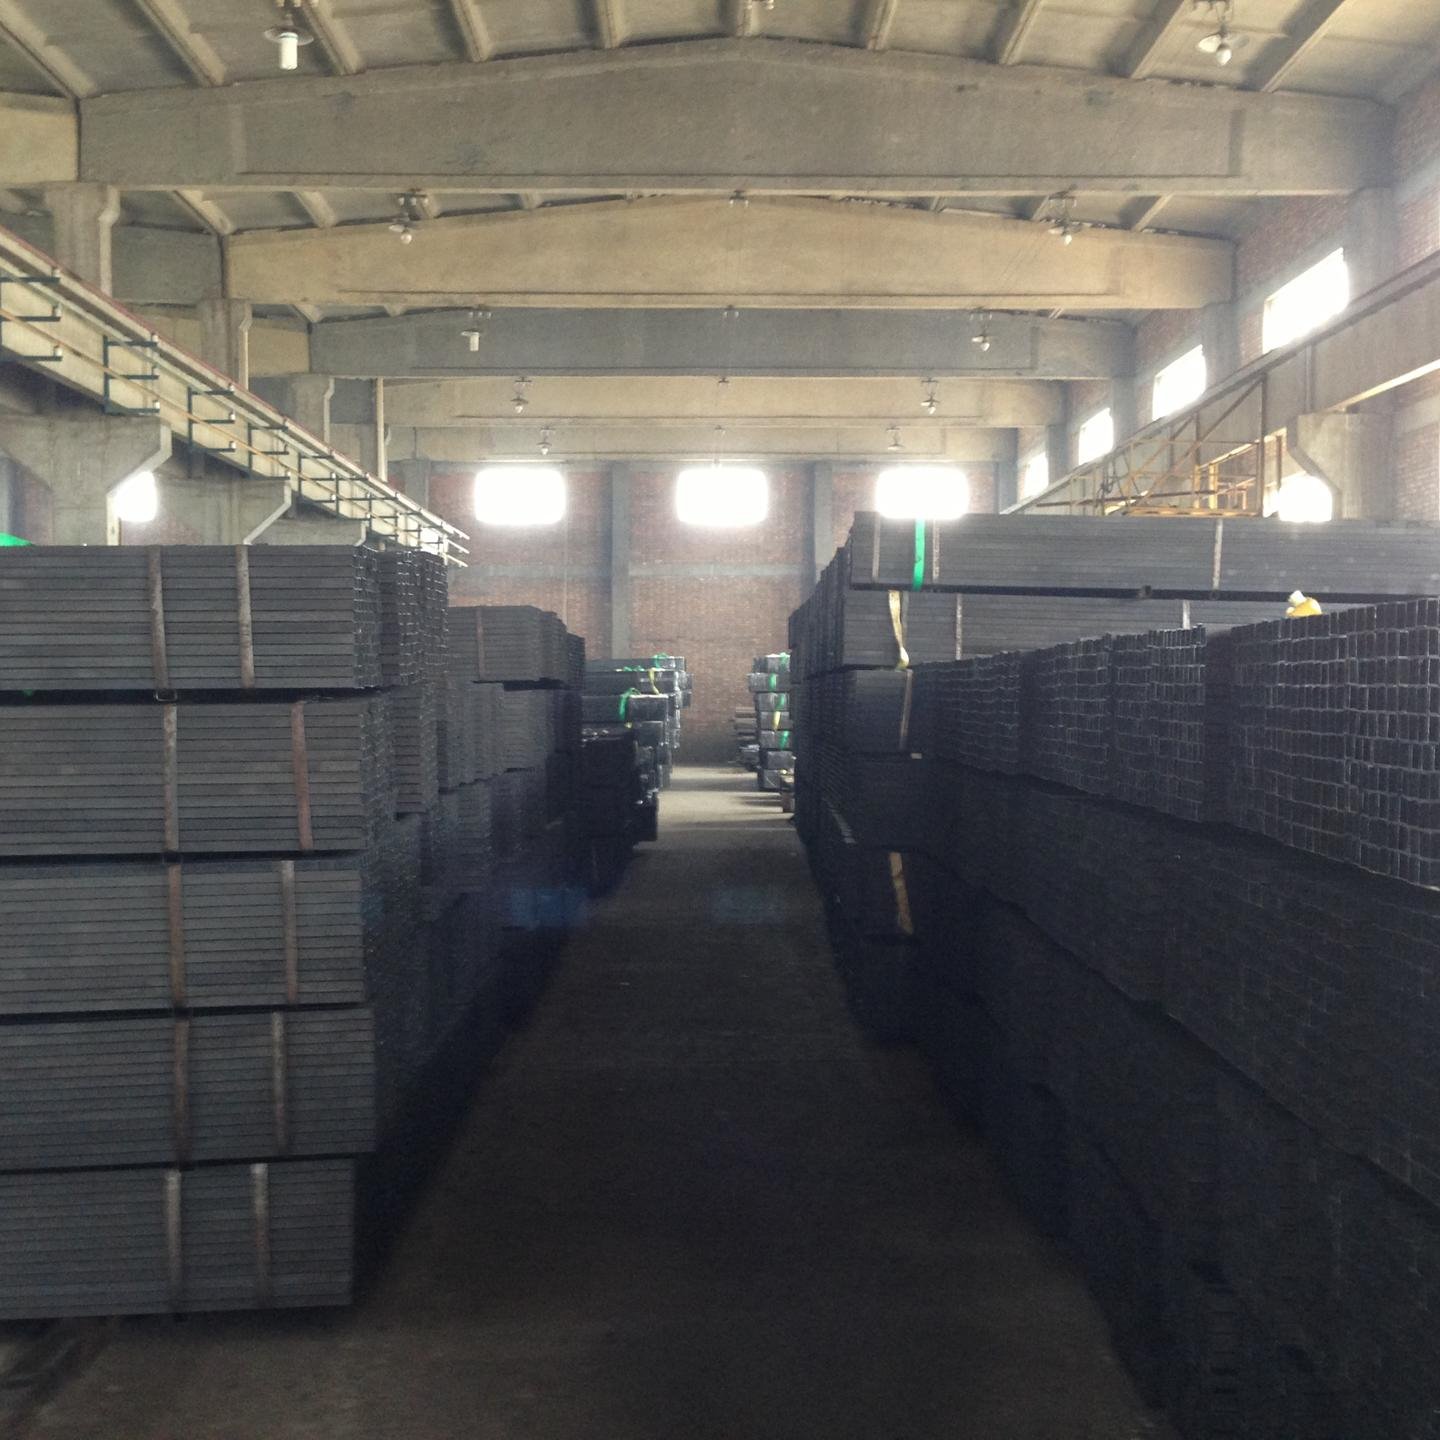 天津腾越钢铁有限公司主营销售 黑方管 焊接方管 涂油方管 60*60 Q235材质  可根据产品标准及客户需求定做